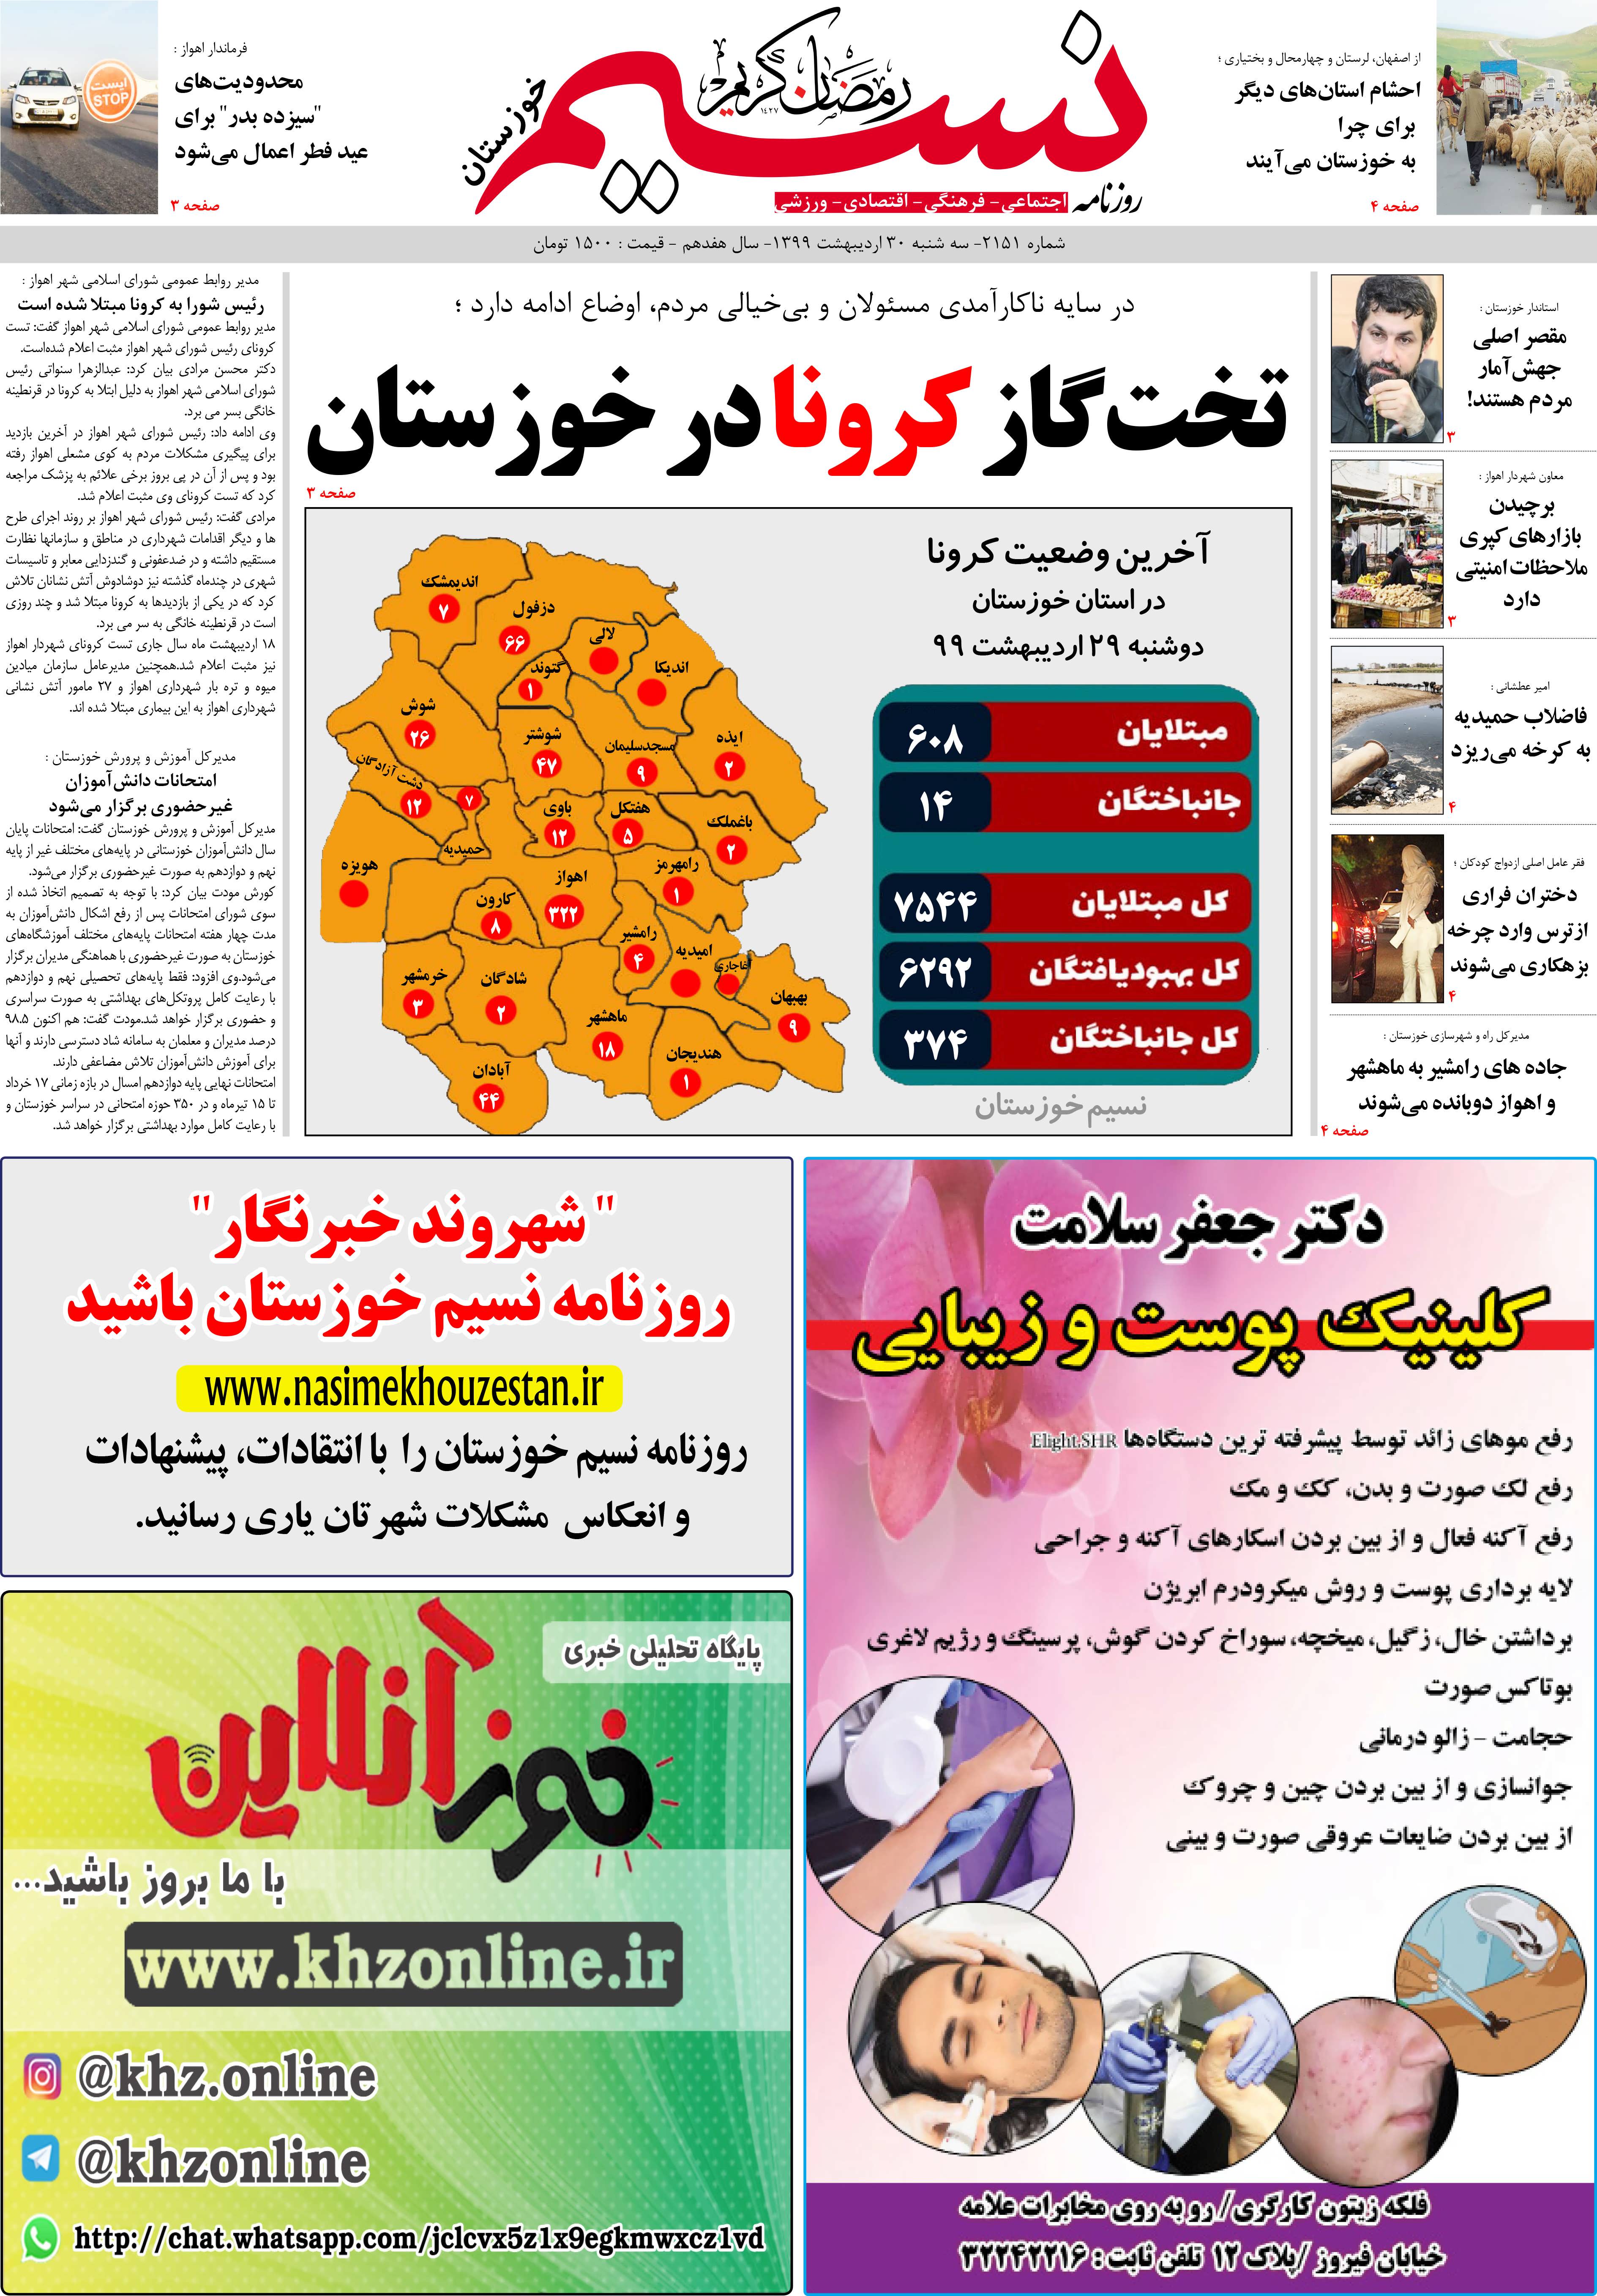 صفحه اصلی روزنامه نسیم شماره 2151 